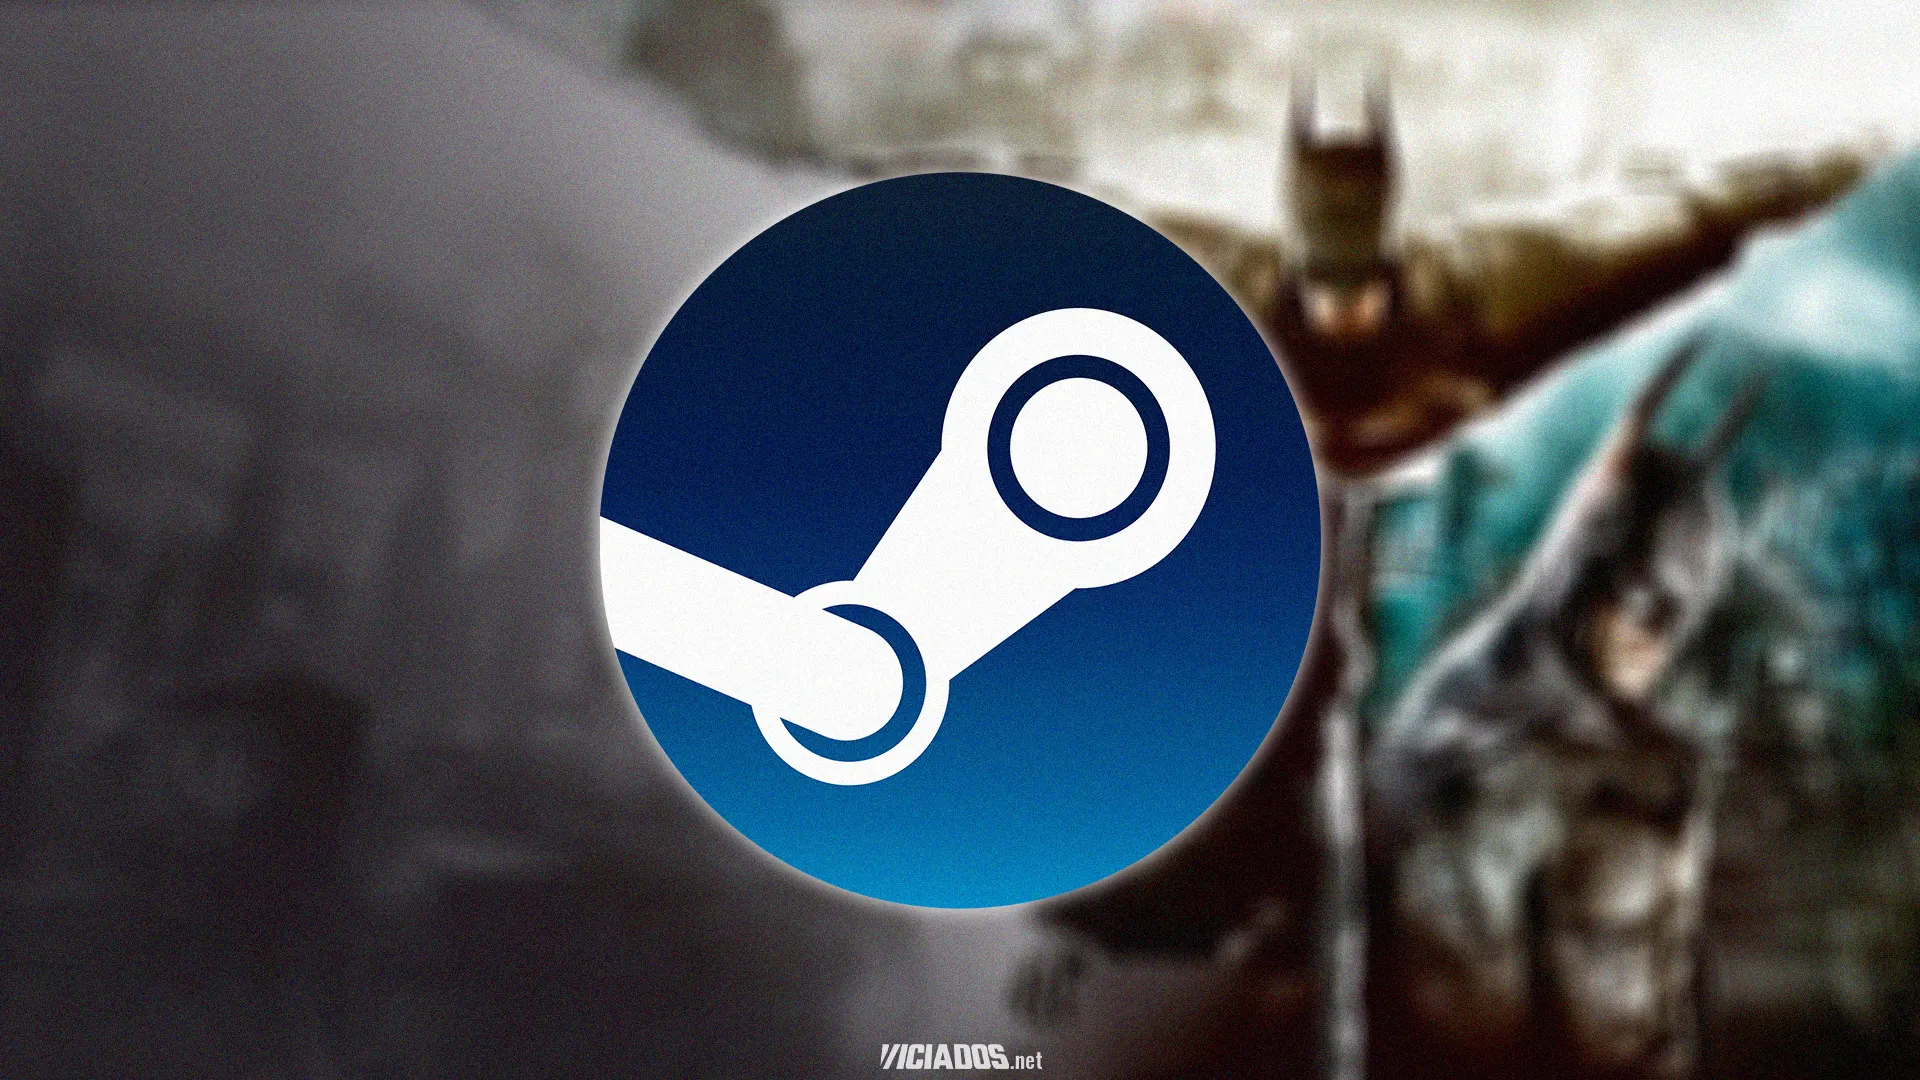 Steam | Grande bundle de jogos do Batman está com desconto de 85% por pouco tempo 2023 Viciados